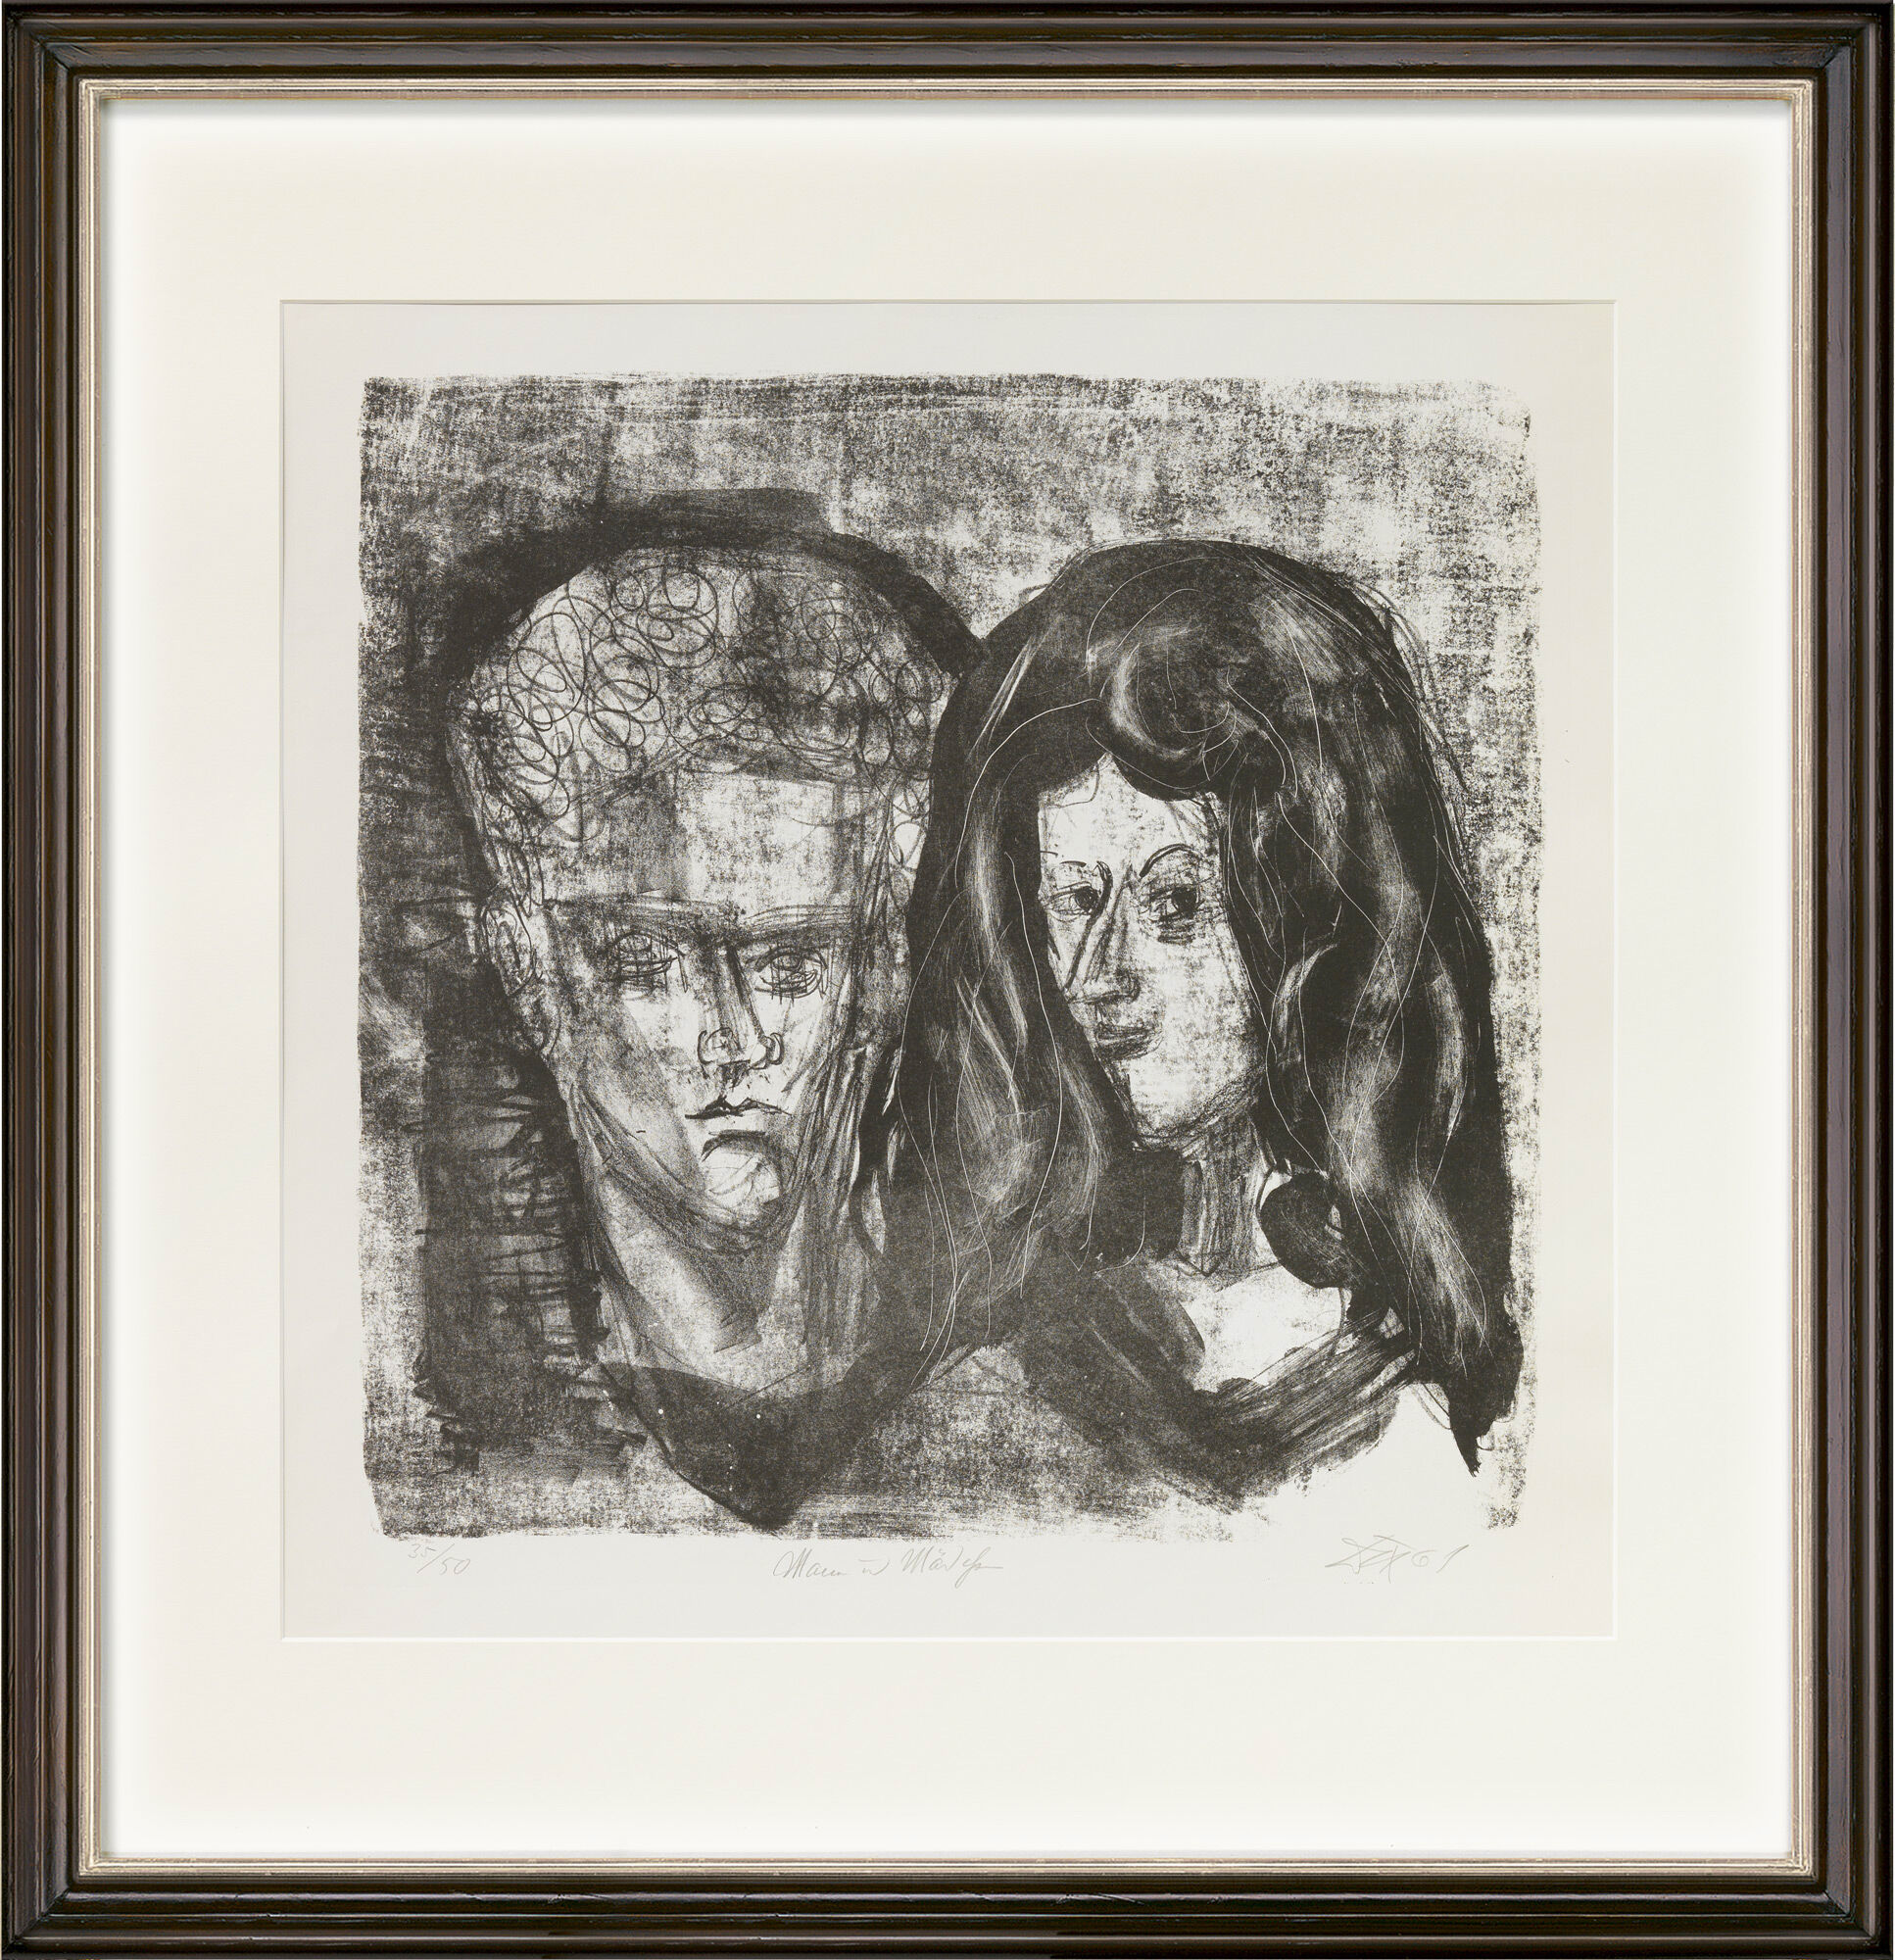 Tableau "Homme et fille" (1961) von Otto Dix